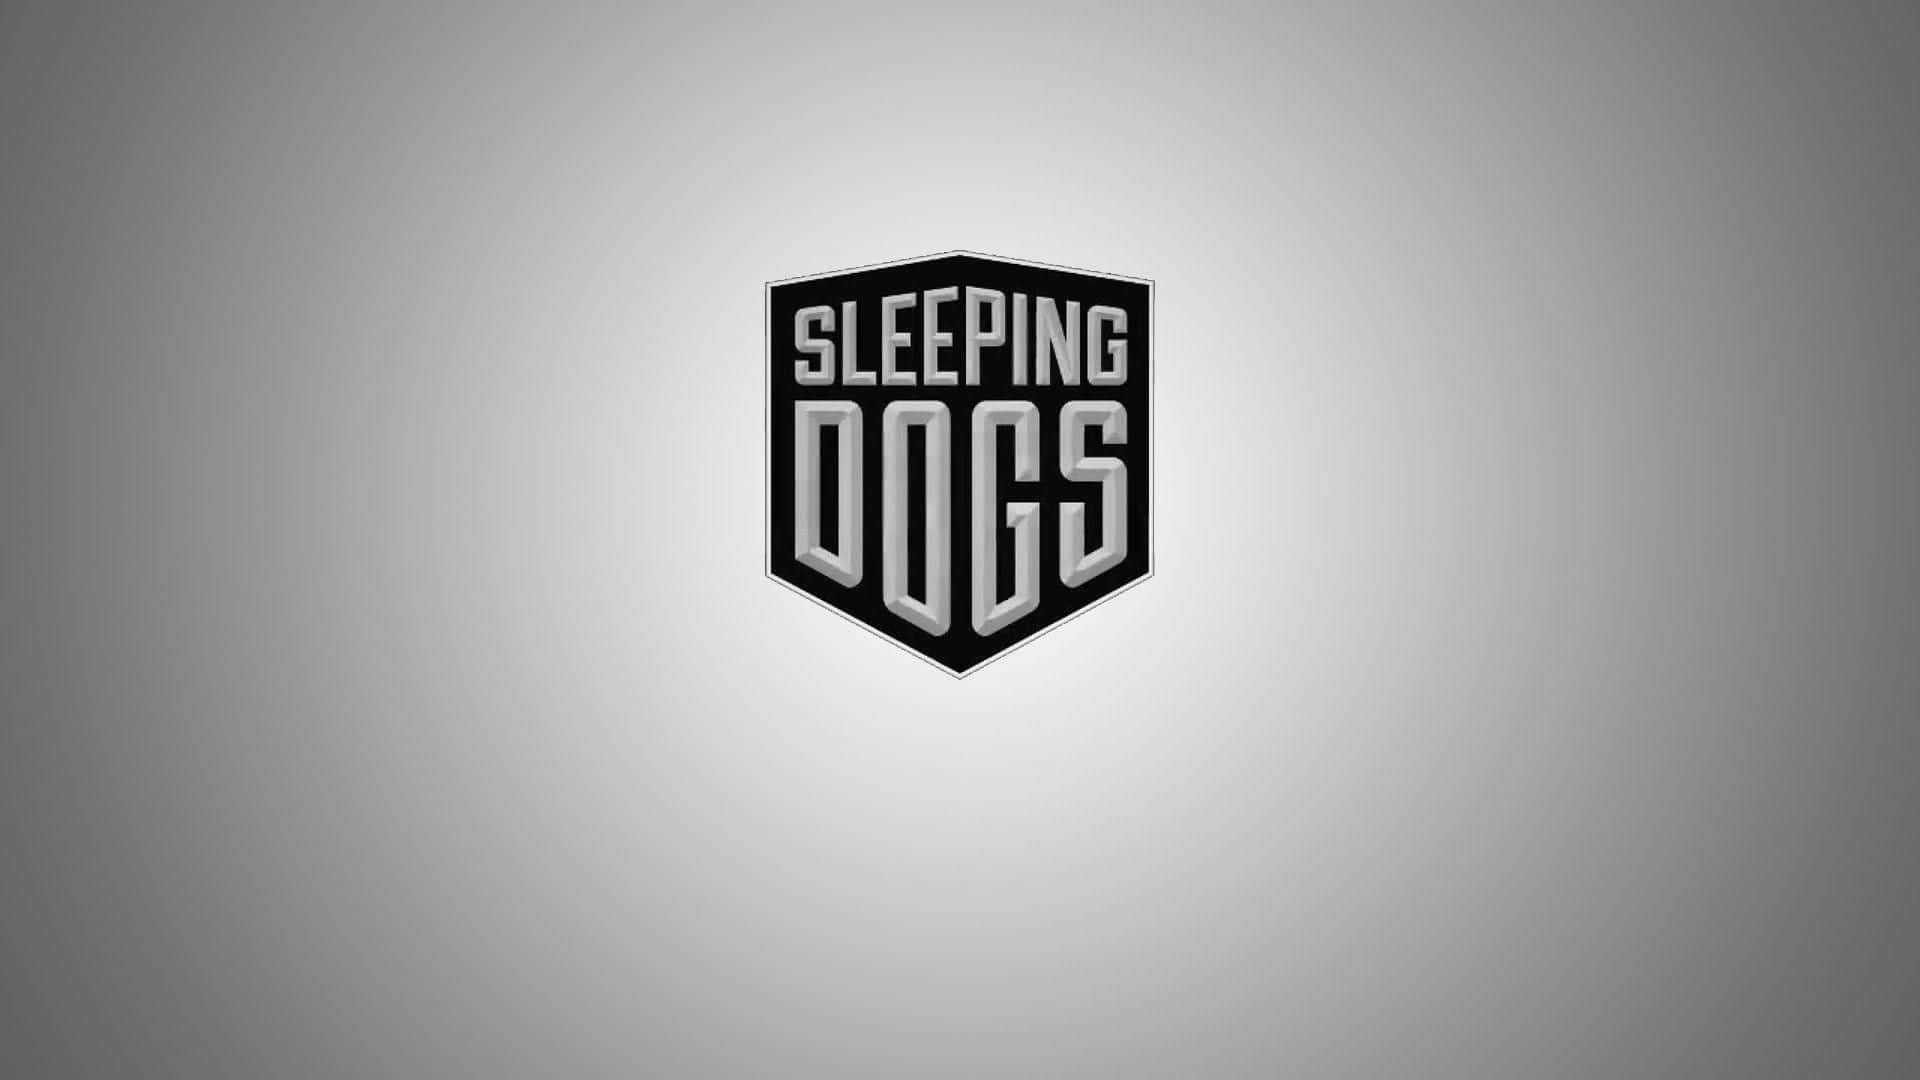 Fondode Pantalla De Alta Definición Con El Logotipo Del Título De Sleeping Dogs.